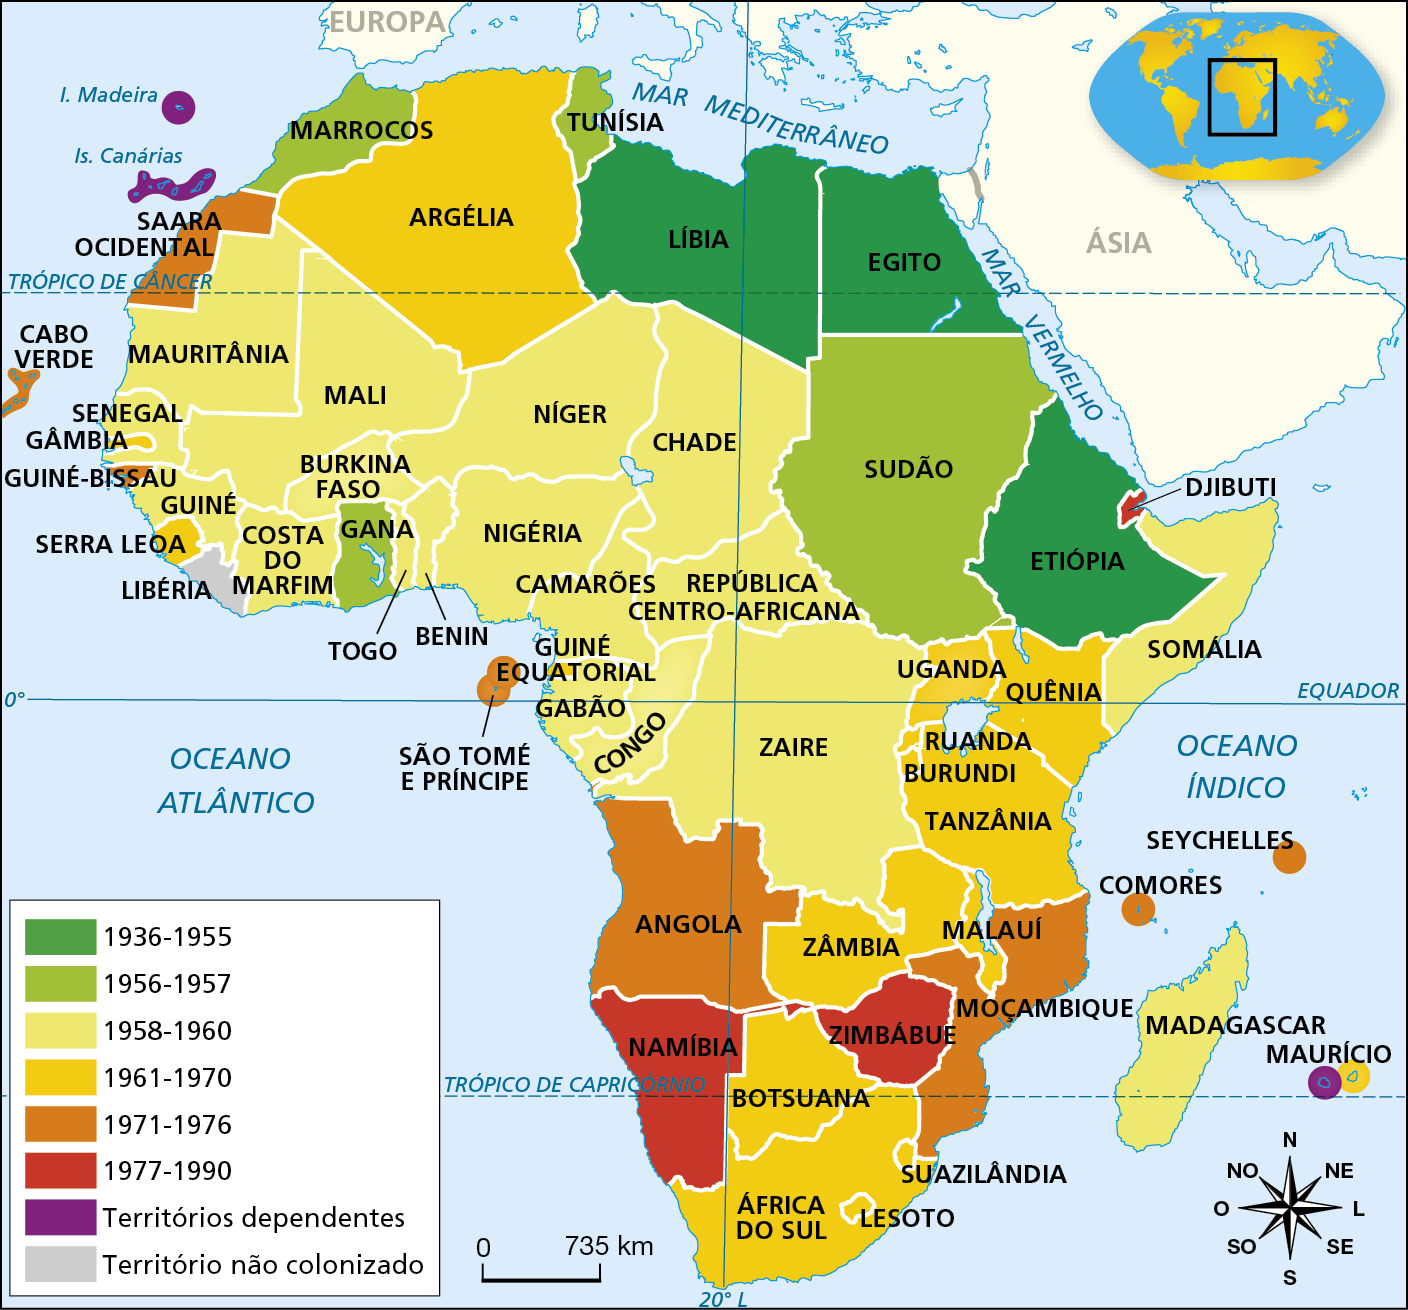 Mapa. As independências na África. Legenda: Verde-escuro: 1936 a 1955 Verde-claro: 1956 a 1957 Amarelo-claro: 1958 a 1960 Amarelo-escuro: 1961 a 1970 Laranja: 1971 a 1976 Vermelho: 1977 a 1990 Roxo: Territórios dependentes Cinza: Território não colonizado O mapa mostra que, entre 1936 e 1955, conquistaram a independência a Líbia, o Egito e Etiópia; entre 1956 e 1957 foi a vez do Marrocos, da Tunísia, do Sudão e de Gana; entre 1958 e 1960, tornaram-se independentes a Mauritânia, o Senegal, a Guiné, a Costa do Marfim, o Mali, Burkina Faso, o Togo, Benin, o Níger, a Nigéria, o Chade, Camarões, a República Centro-Africana, o Gabão, o Congo, o Zaire, a Somália e Madagascar; entre 1961 e 1970, conquistaram a independência Argélia, Gâmbia, Serra Leoa, a Guiné-Equatorial, Uganda, Quênia, Ruanda, Burundi, Tanzânia, Malaui, Zâmbia, Botsuana, África do Sul, Suazilândia, África do Sul, Lesoto, Suazilândia e parte das Ilhas Maurício; entre 1971 e 1976 foi a vez de Saara Ocidental, Guiné-Bissau, São Tomé e Príncipe, Angola, Moçambique, Comores e Seychelles tornarem-se independentes. A Namíbia, Djibuti e o Zimbábue conquistaram sua independência entre 1977 e 1990. Os territórios dependentes do continente africano são a Ilha da Madeira, Ilhas Canarias e parte das Ilhas Maurício. O território não colonizado é a Libéria. Na parte inferior, rosa dos ventos e escala de 0 a 735 quilômetros.